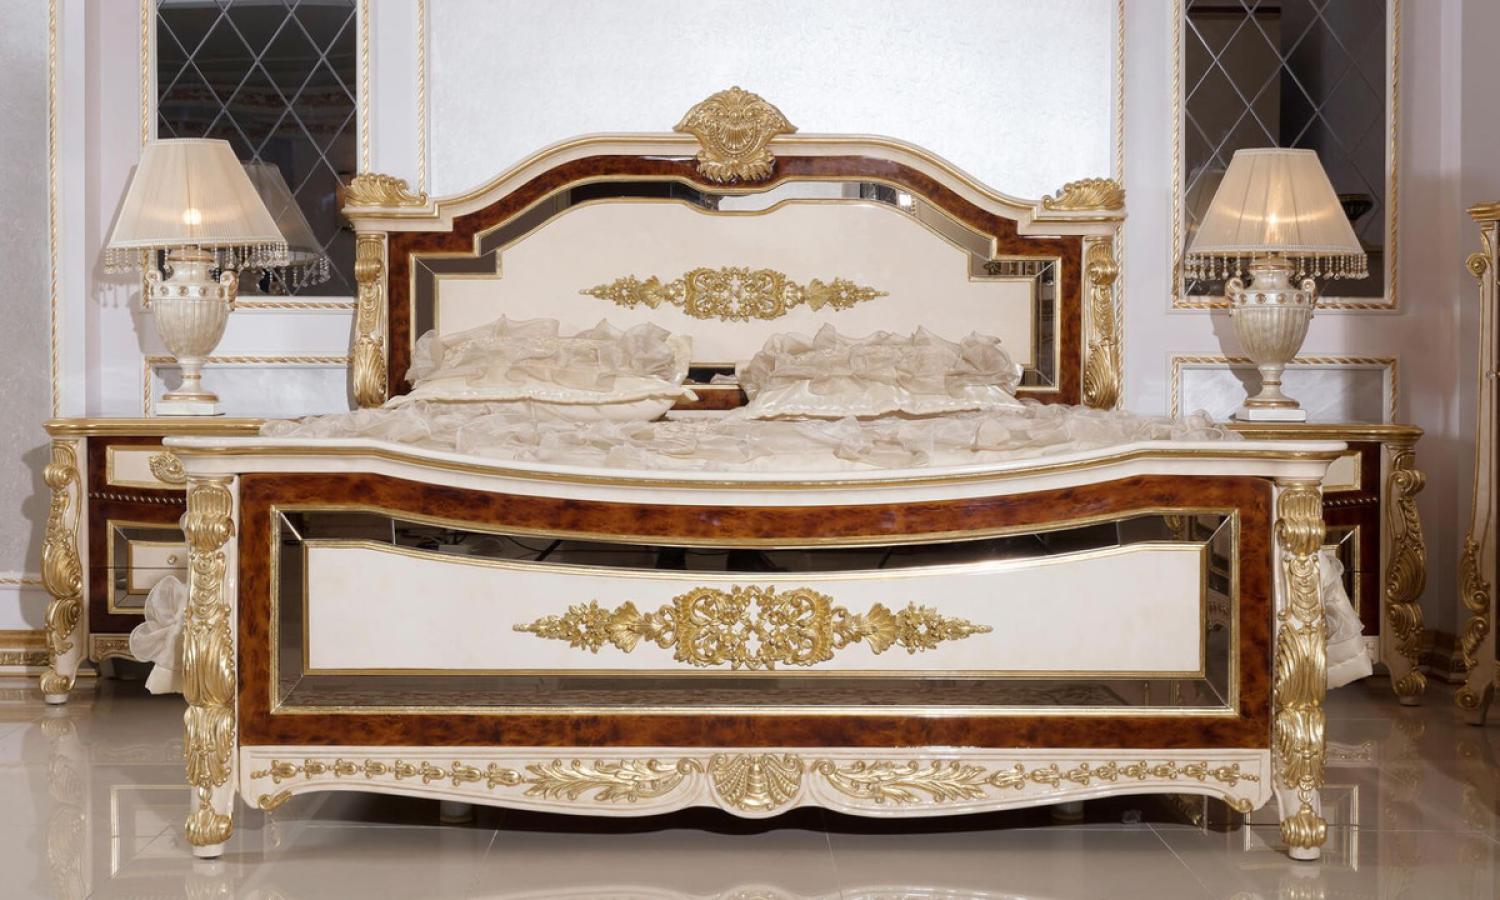 Casa Padrino Luxus Barock Schlafzimmer Set Weiß / Beige / Braun / Gold - 1 Barock Doppelbett mit Kopfteil & 2 Barock Nachtkommoden - Luxus Schlafzimmer Möbel im Barockstil - Barock Möbel Bild 1